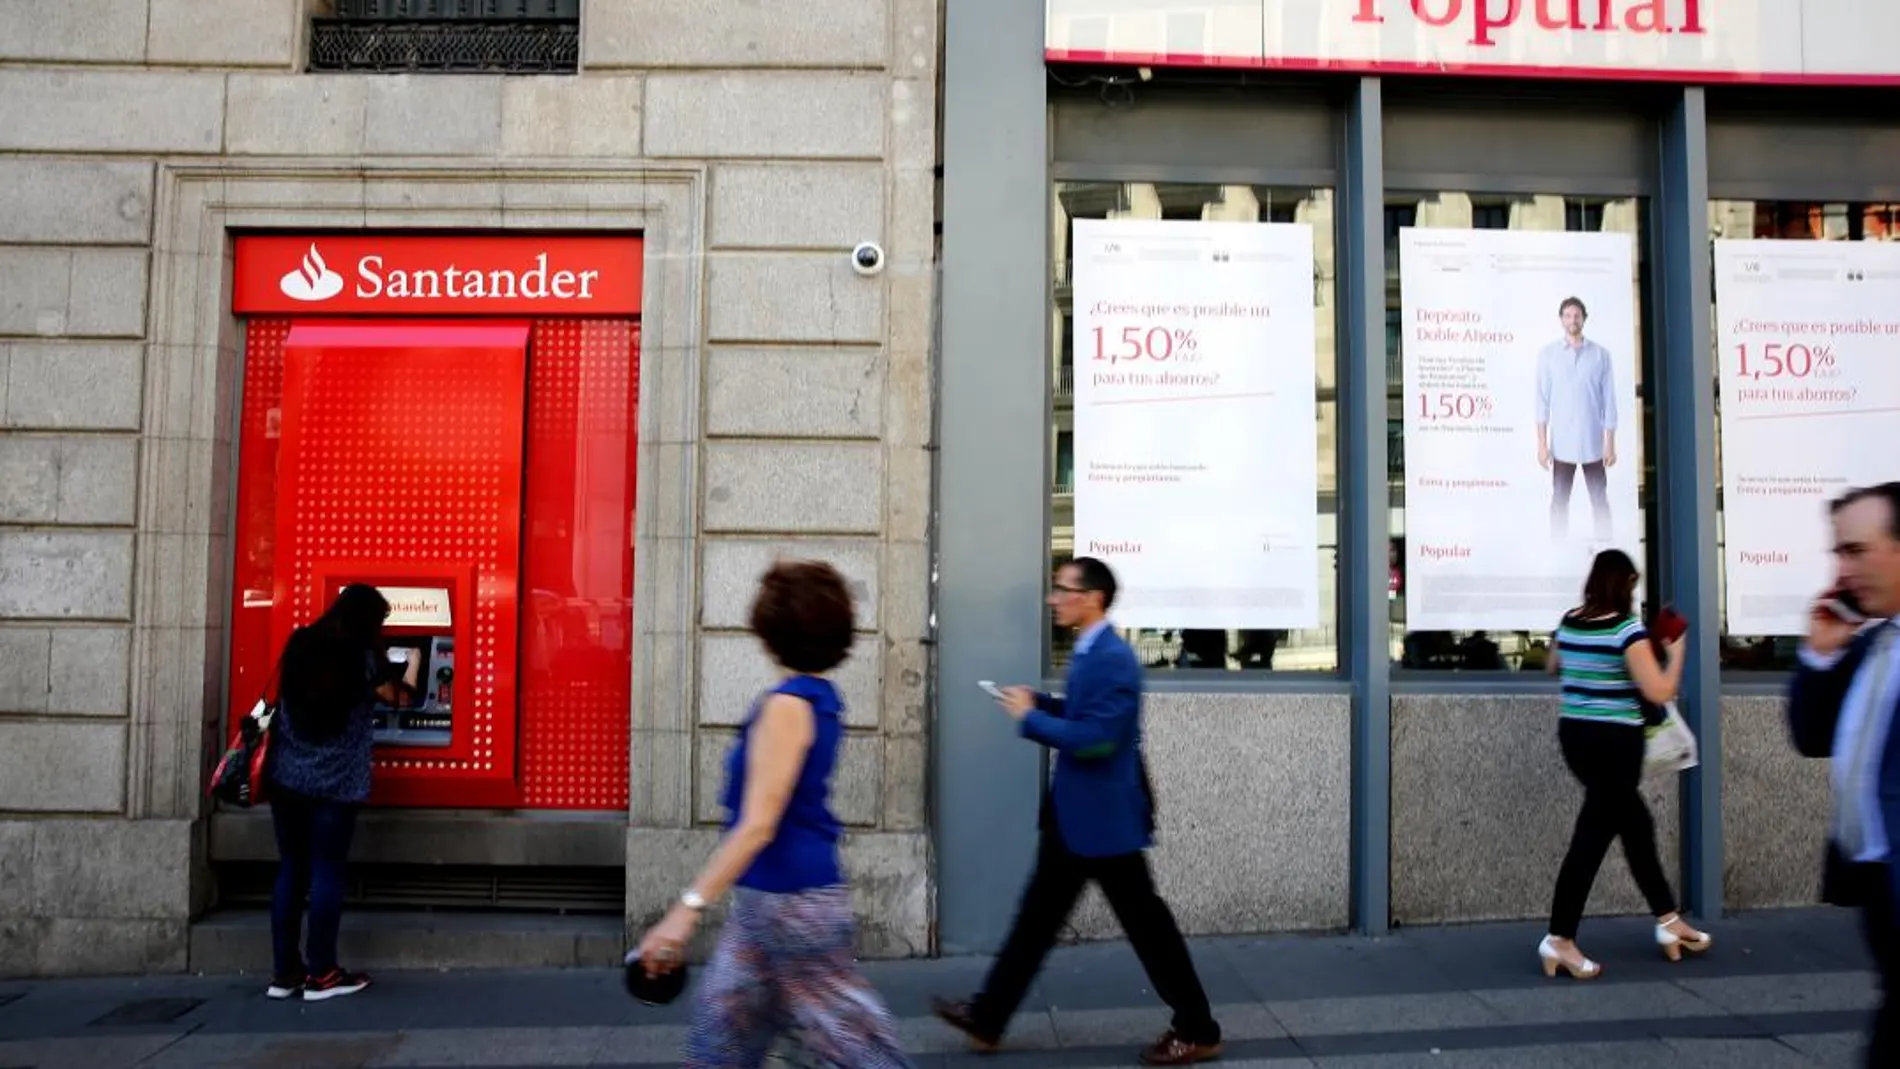 El Santander ganó 6.619 millones en 2017, un 7% más, tras integrar Popular